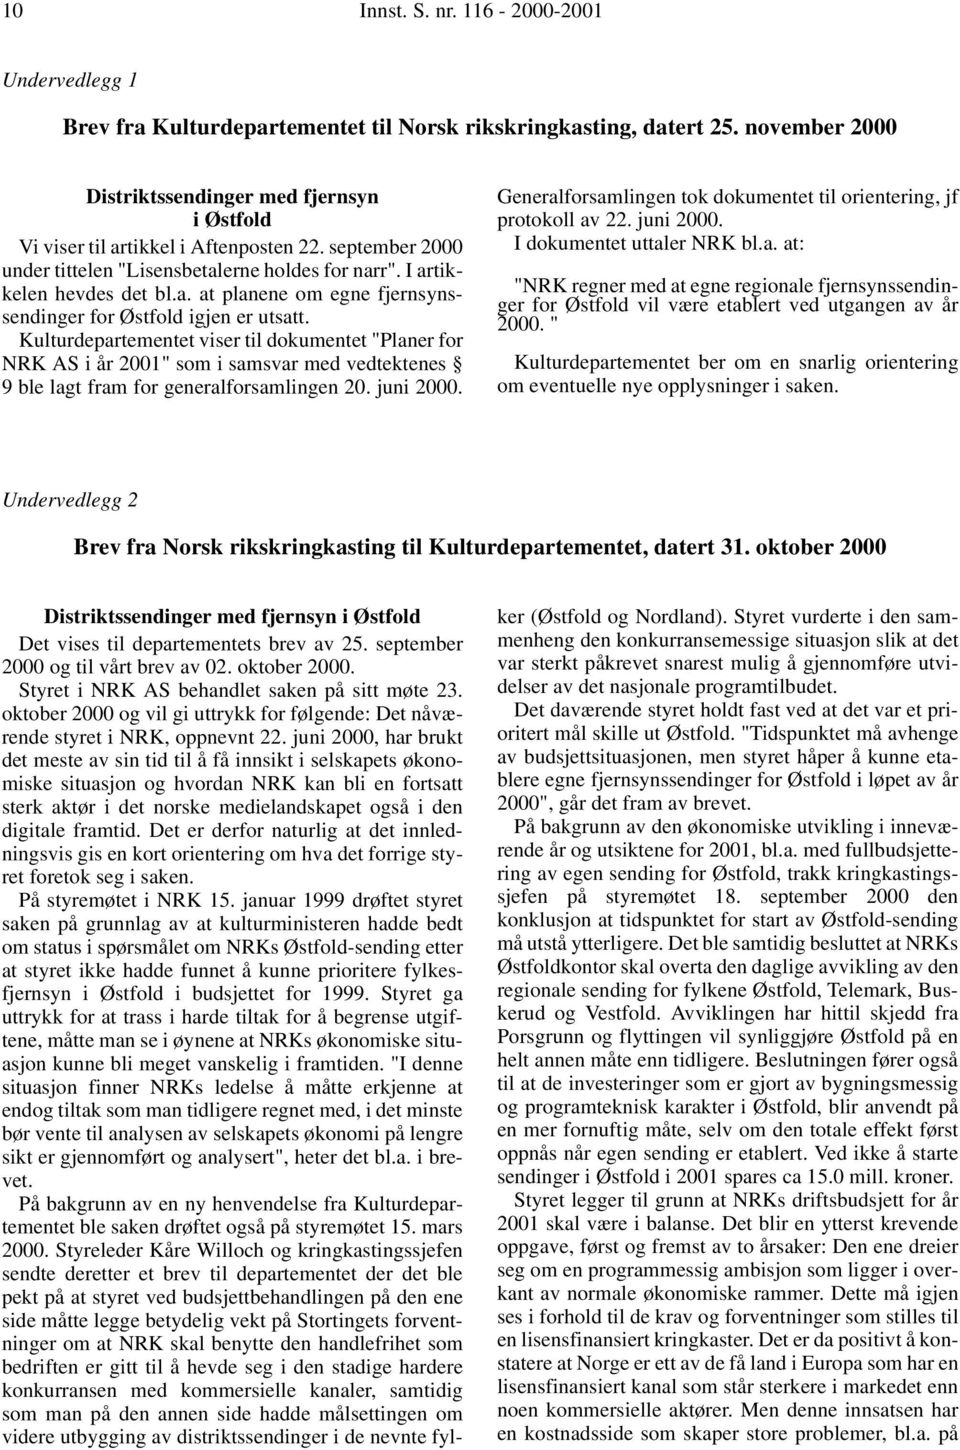 Kulturdepartementet viser til dokumentet "Planer for NRK AS i år 2001" som i samsvar med vedtektenes 9 ble lagt fram for generalforsamlingen 20. juni 2000.